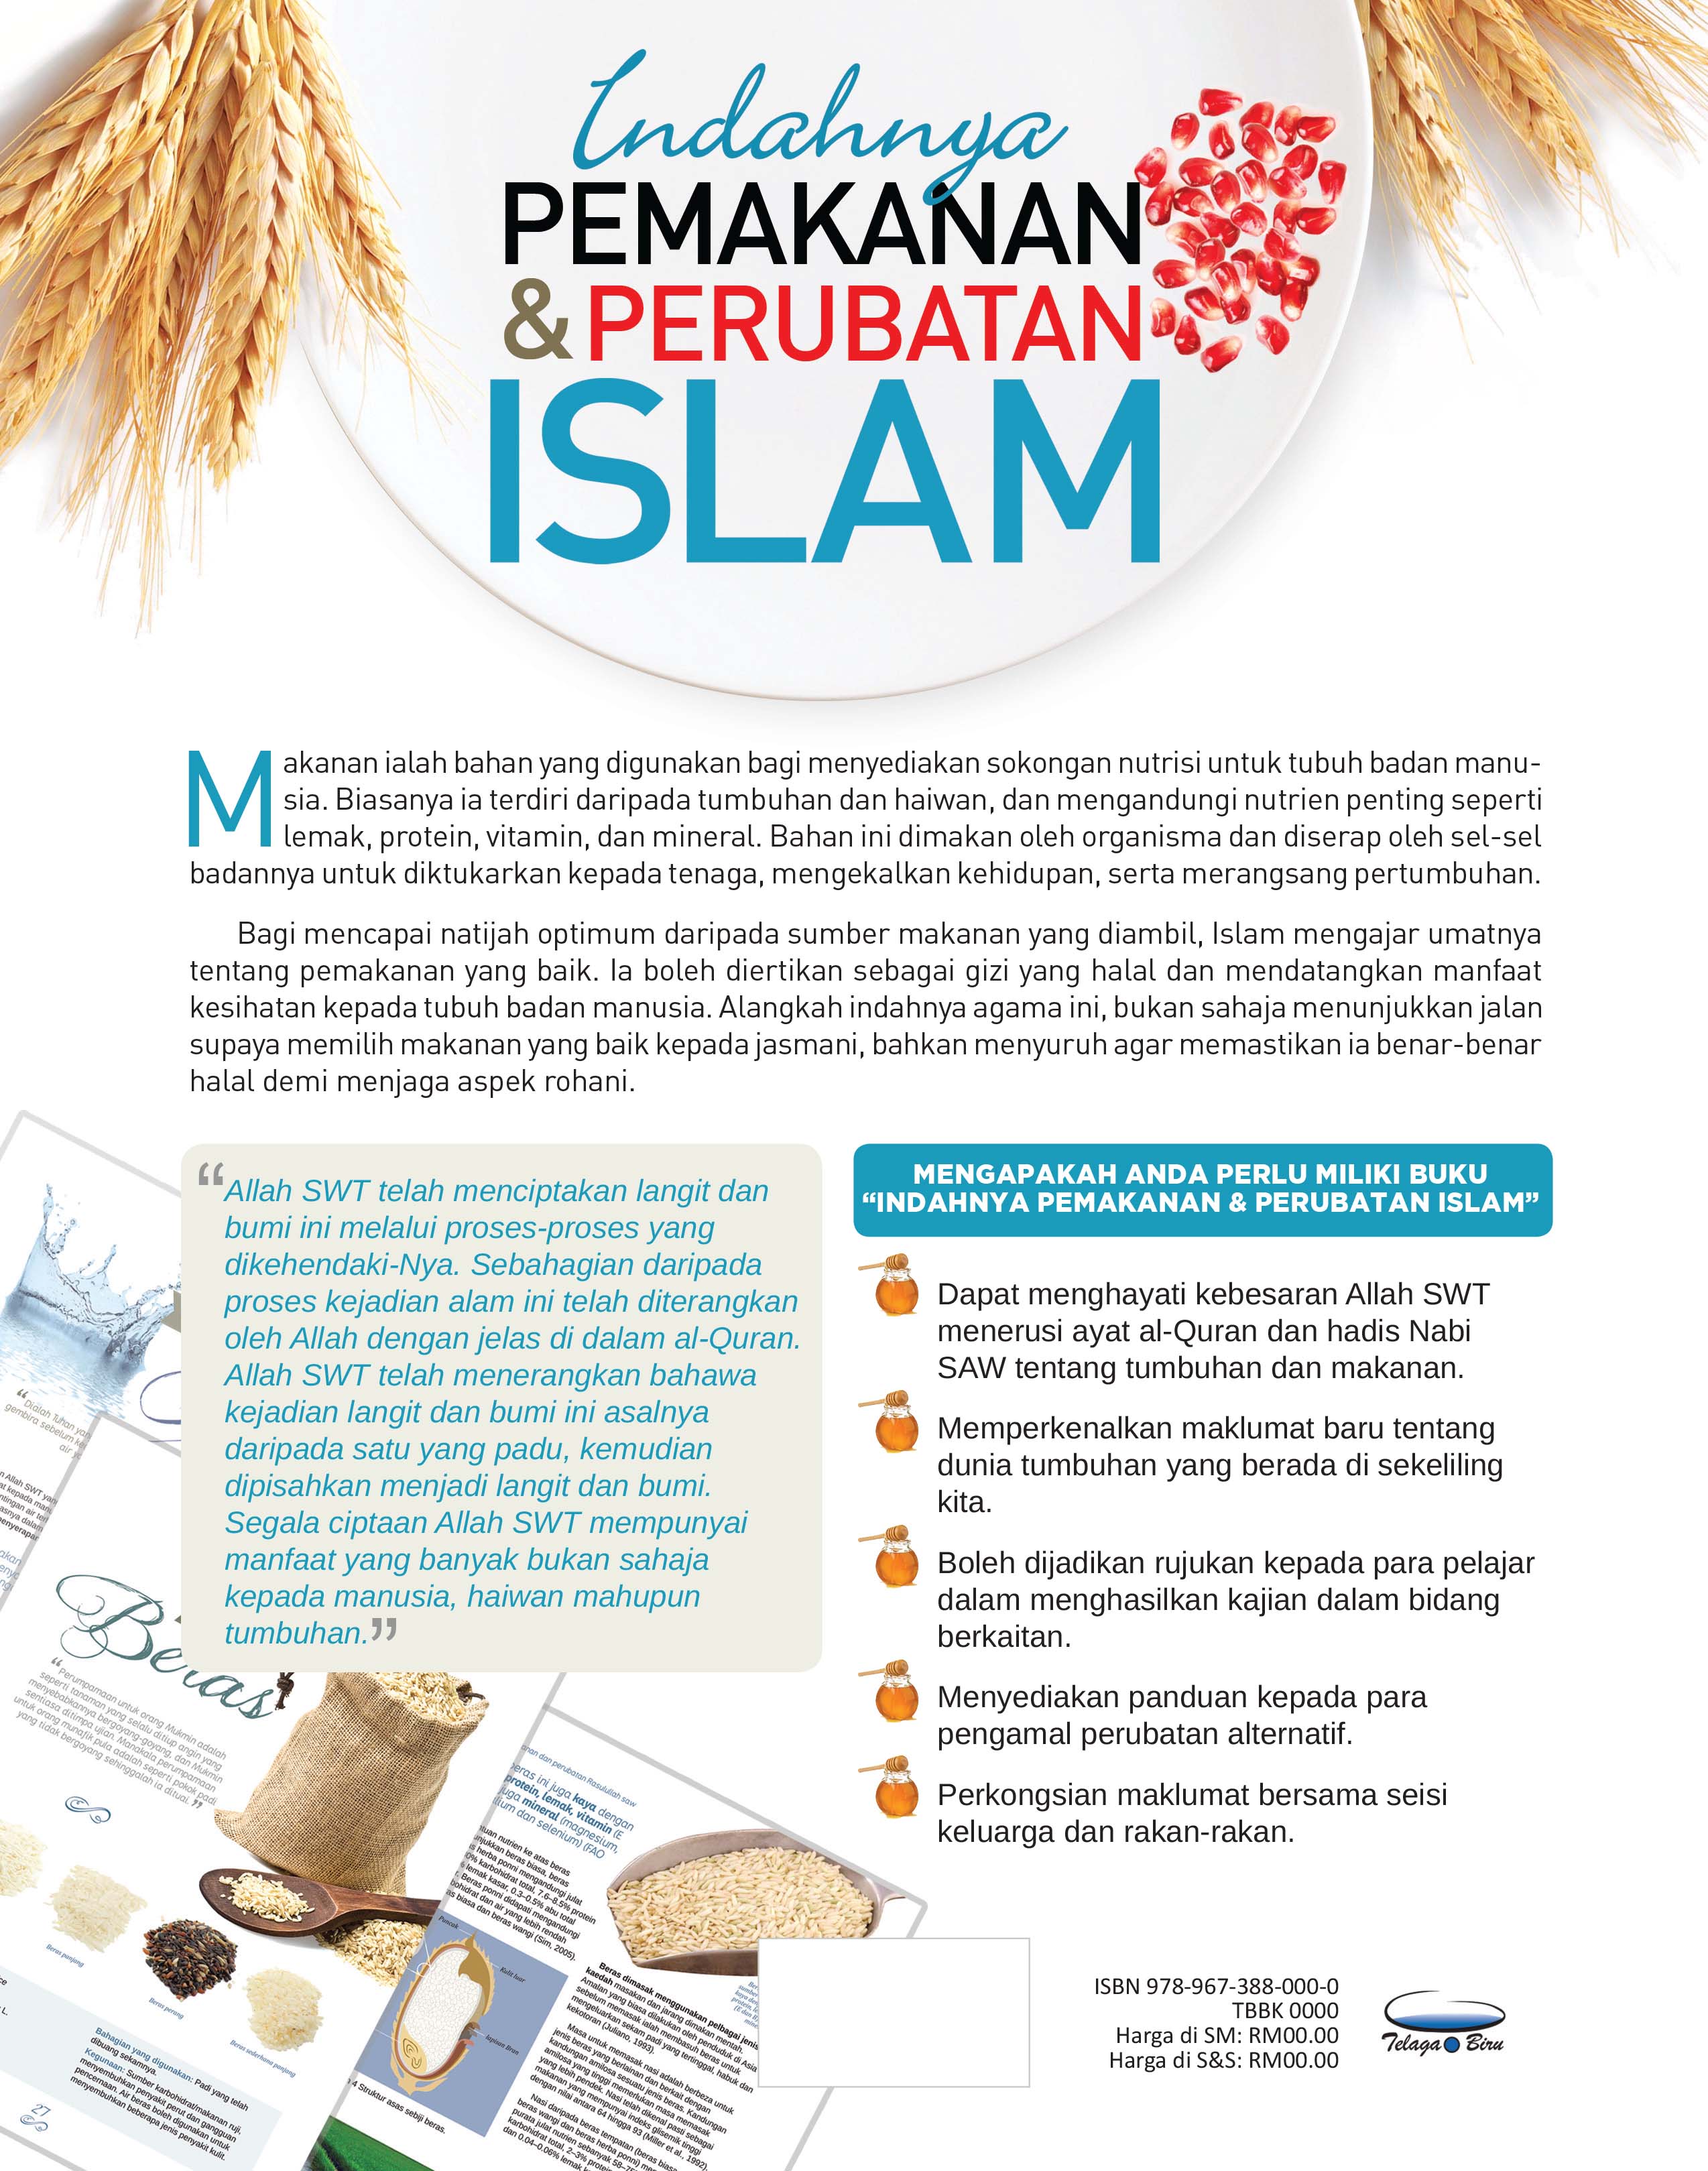 Indahnya Pemakanan & Perubatan Islam - (TBBK1323)